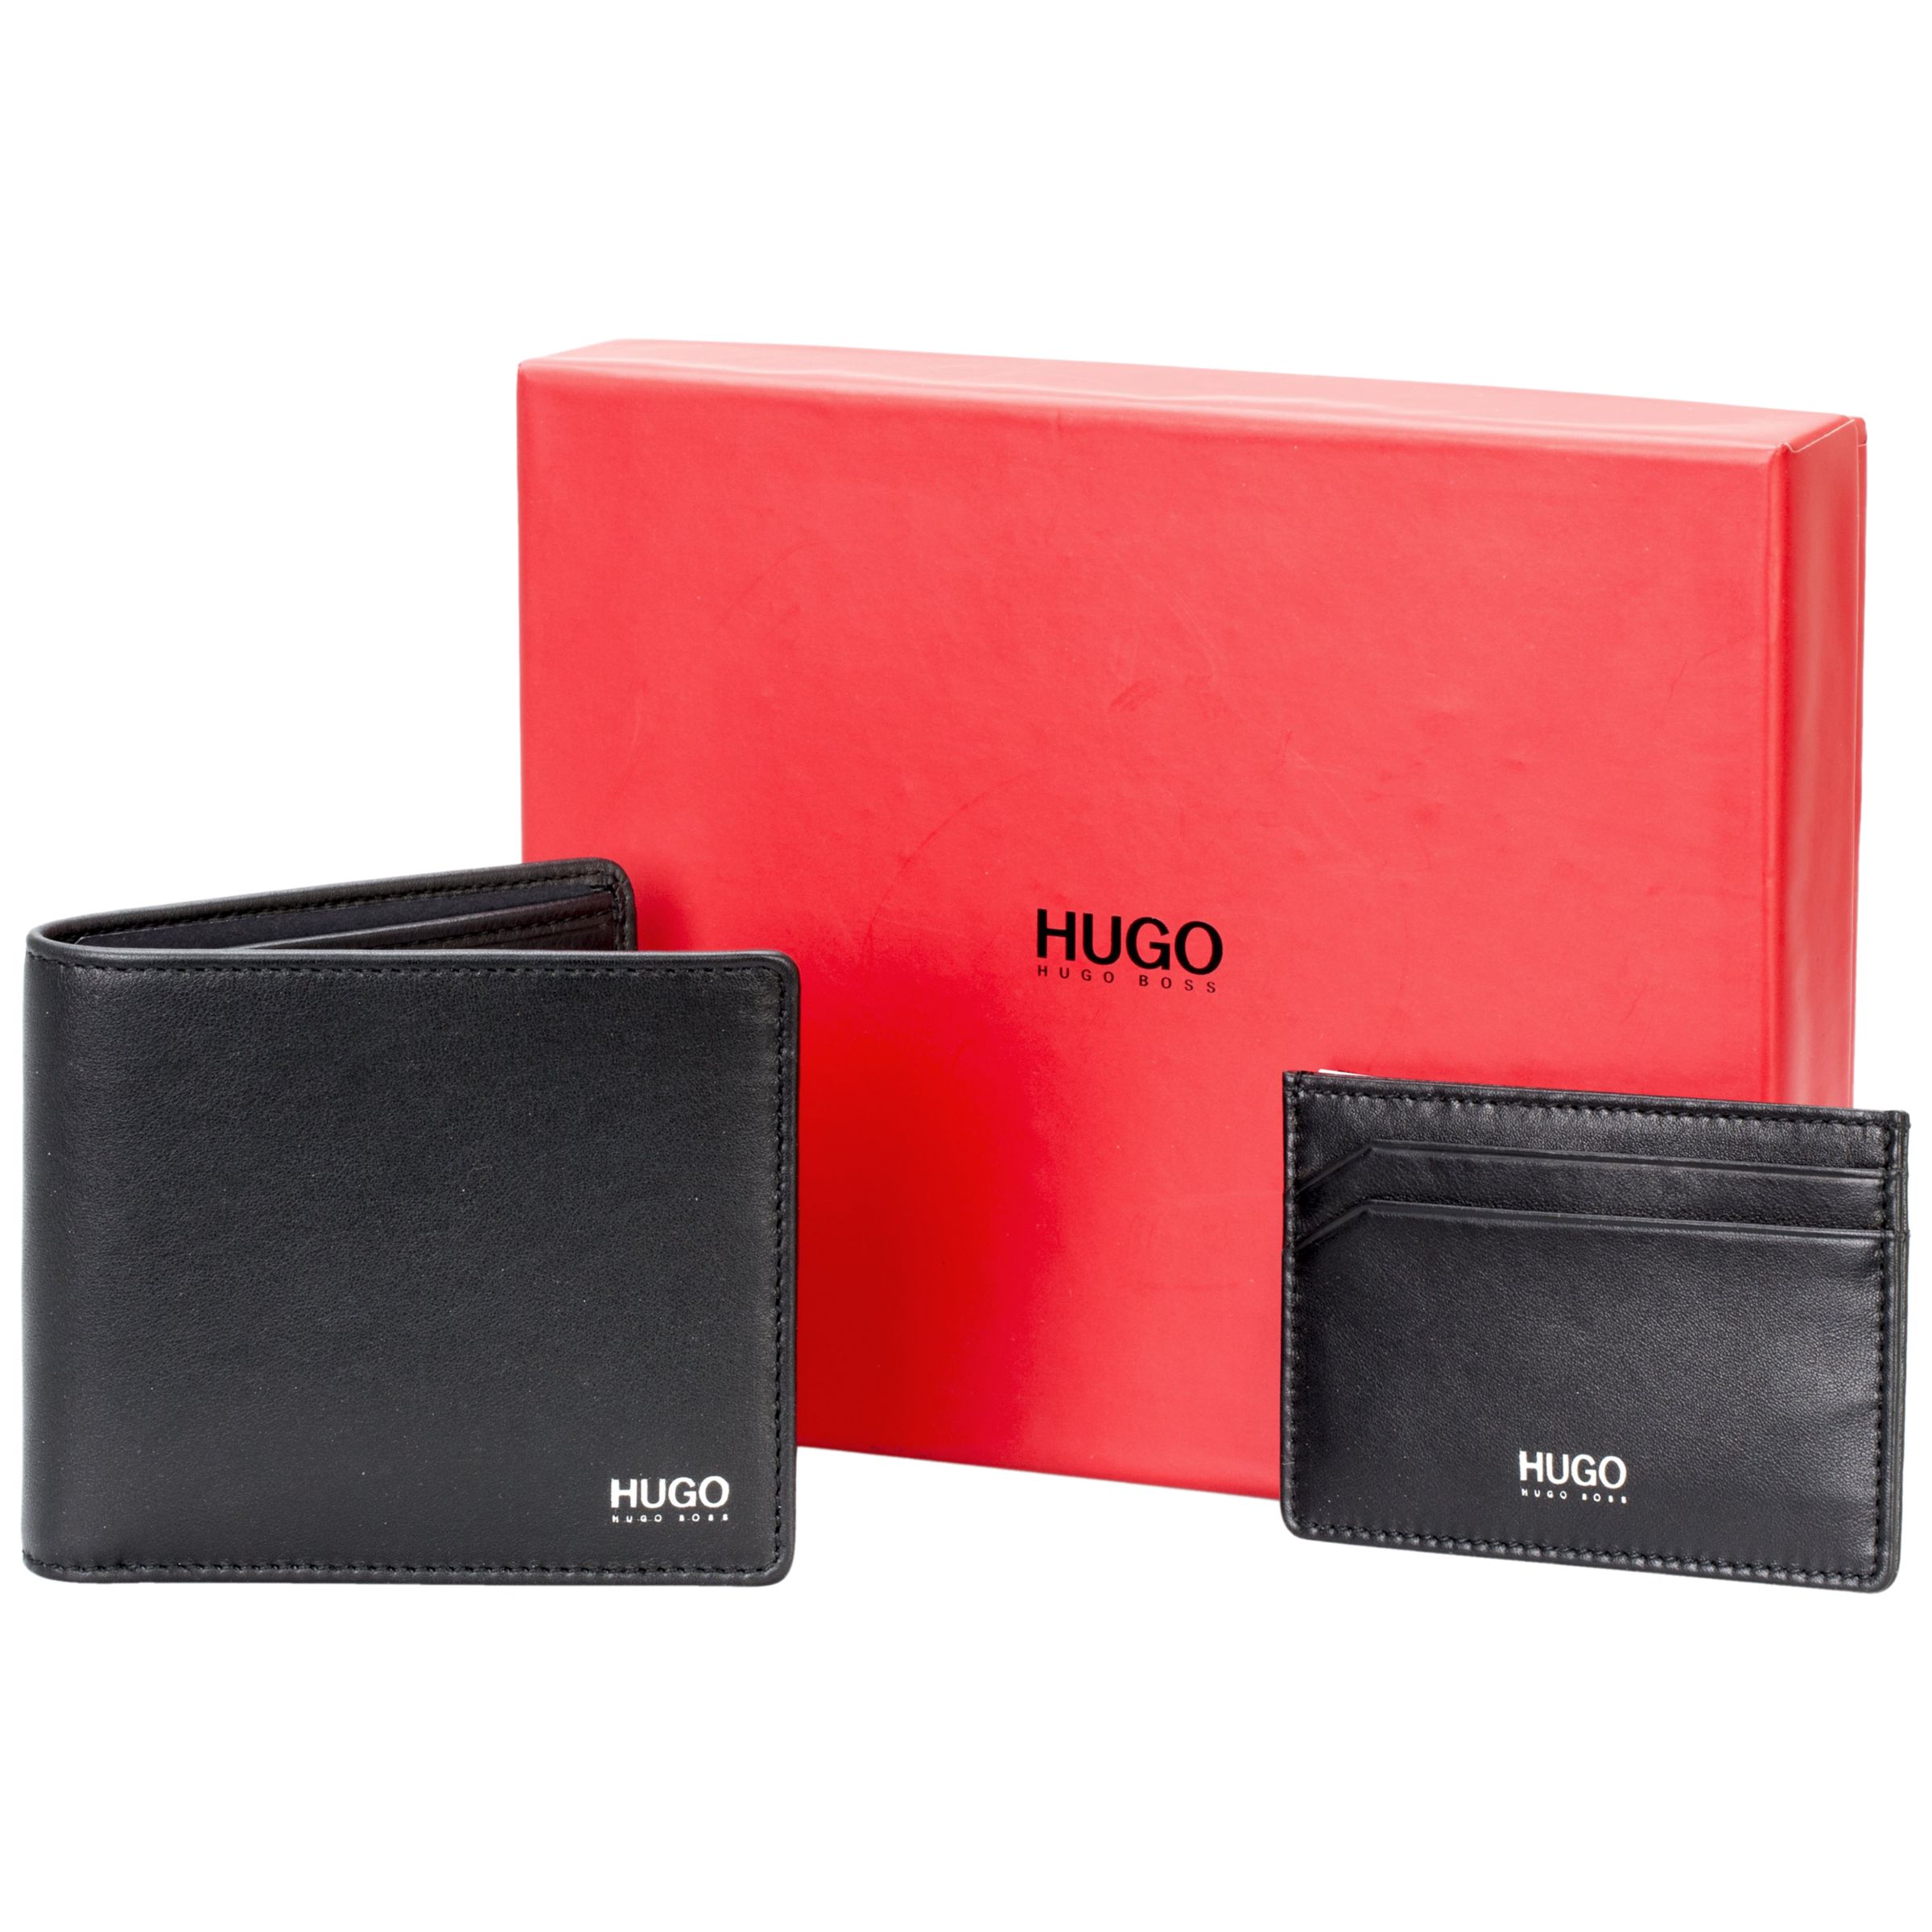 hugo boss wallet set